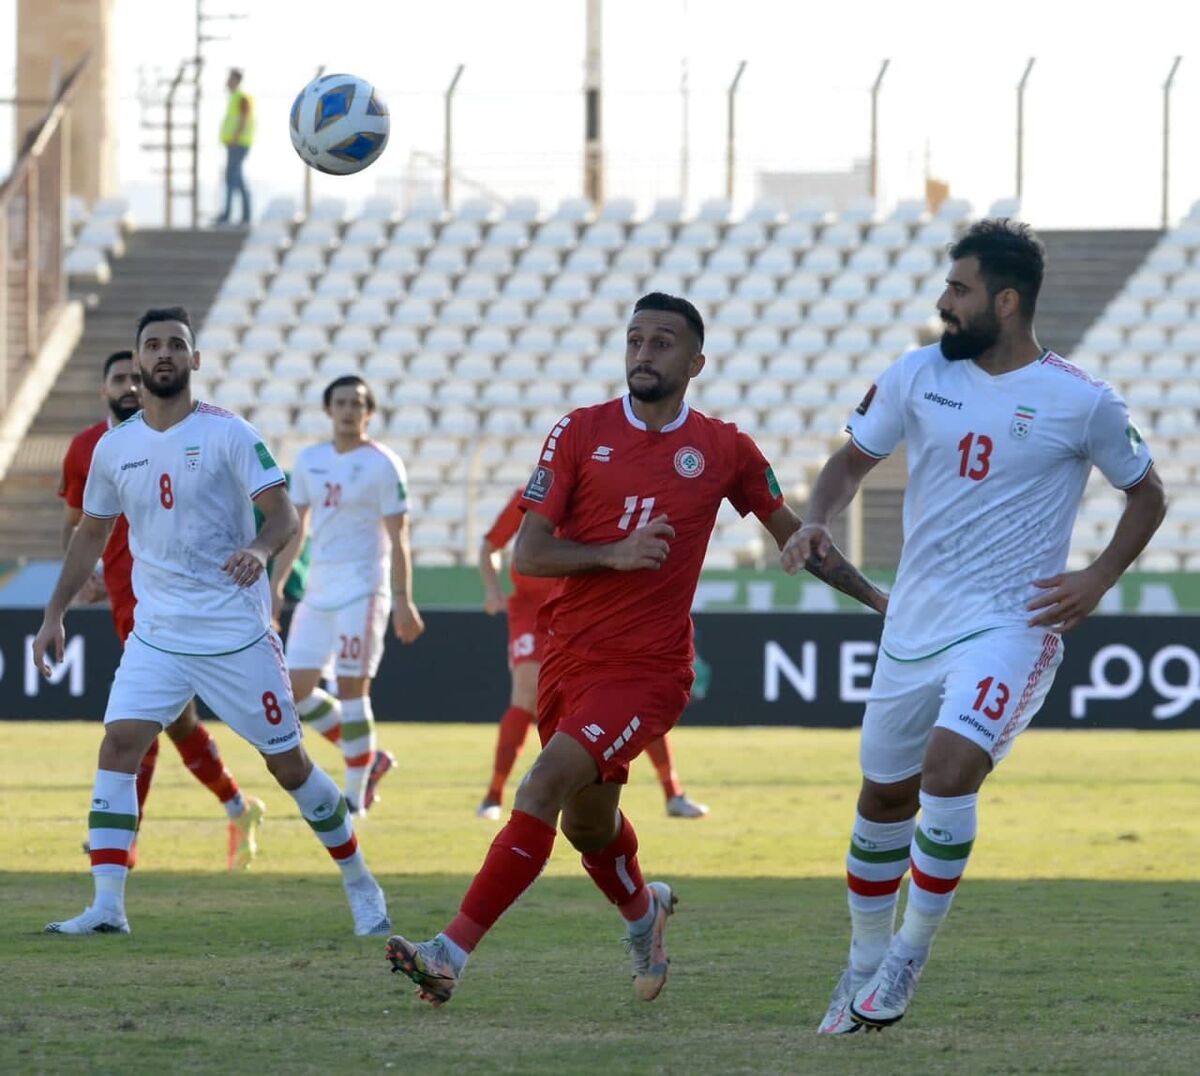  دلیل بزرگ باخت لبنان مقابل تیم ملی کشورمان/ واکنش رسانه اماراتی به اخراج اسکوچیچ